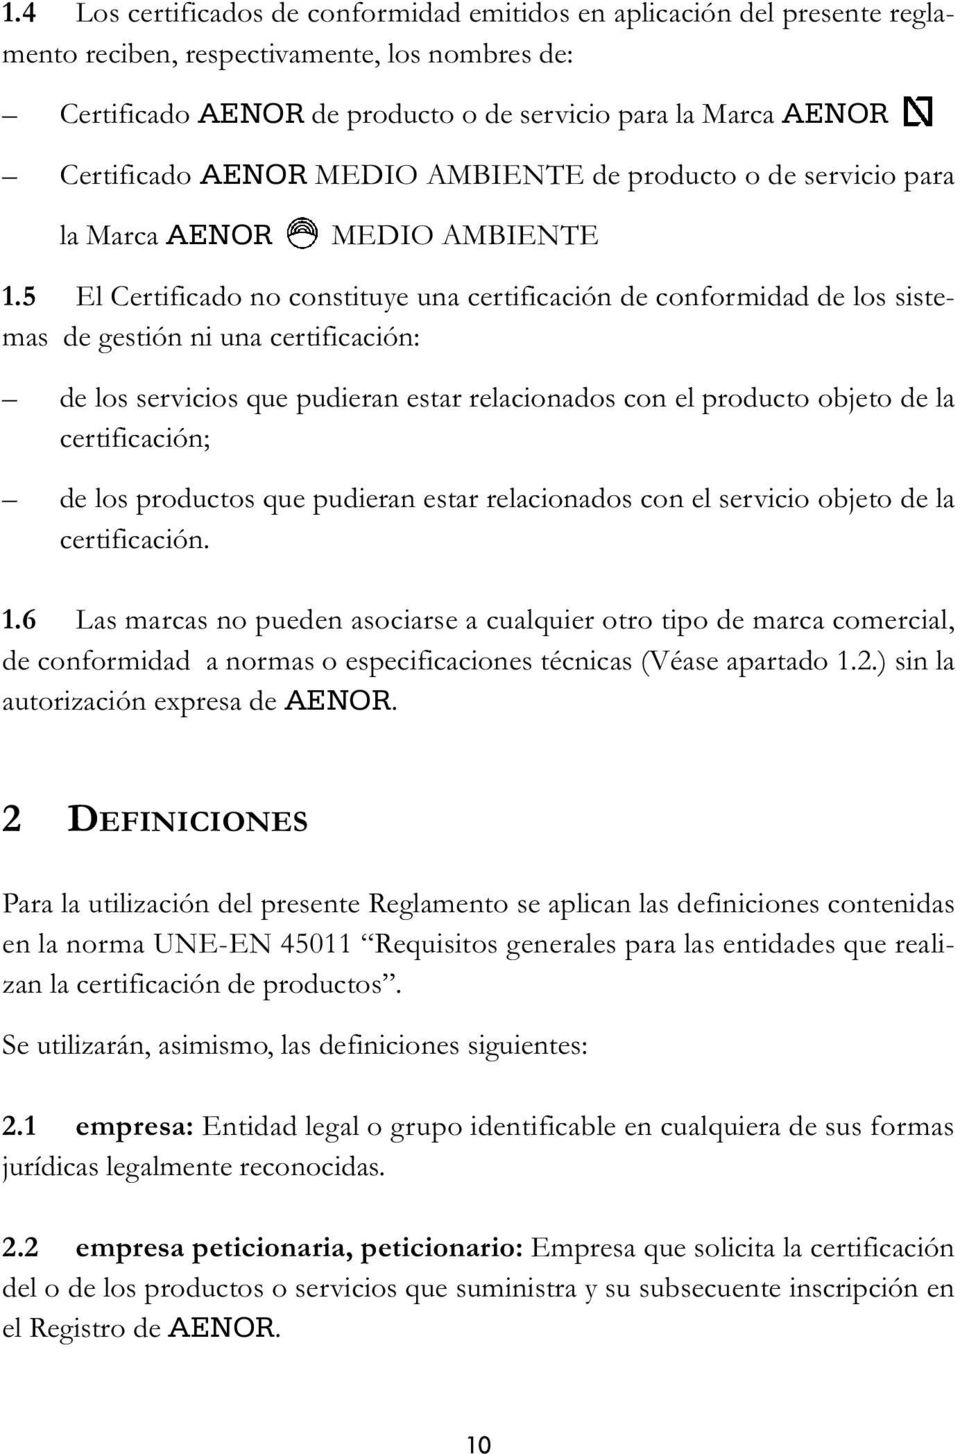 5 El Certificado no constituye una certificación de conformidad de los sistemas de gestión ni una certificación: de los servicios que pudieran estar relacionados con el producto objeto de la